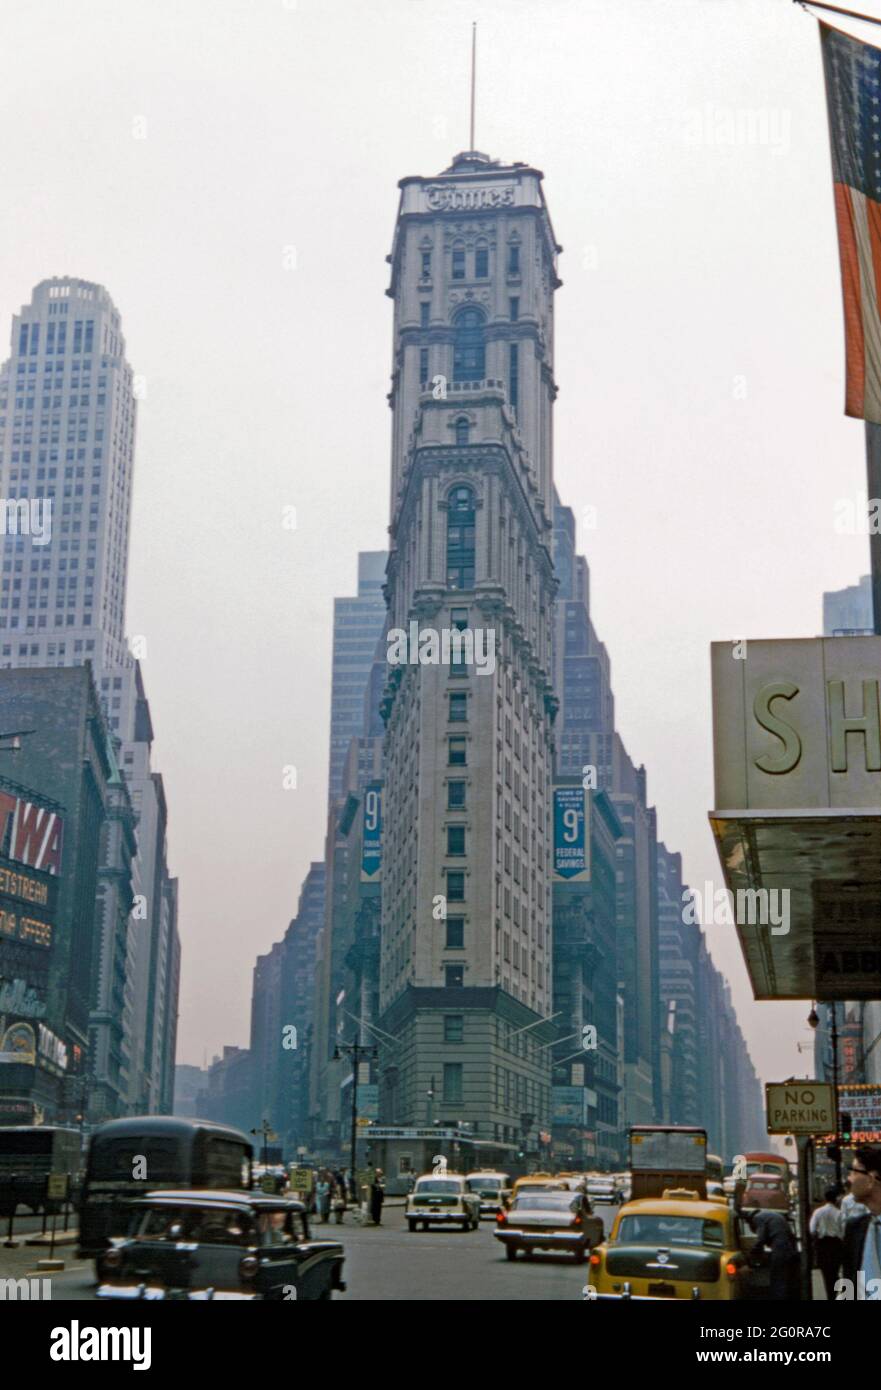 L'edificio del New York Times a Times Square, New York City, USA nel 1957. Times Square è un importante incrocio commerciale, una destinazione turistica, un'area di intrattenimento nel centro di Manhattan, parte di New York, all'incrocio tra Broadway e Seventh Avenue ed è talvolta chiamata ‘The Crossroads of the World’. Nel 1904 il New York Times trasferì qui le operazioni del giornale su un nuovo grattacielo. Ora fortemente ristrutturato e coperto in neon pubblicità è ora chiamato One Times Square. Questa immagine proviene da una vecchia trasparenza dei colori presa da un fotografo dilettante – una fotografia d'epoca degli anni '50. Foto Stock